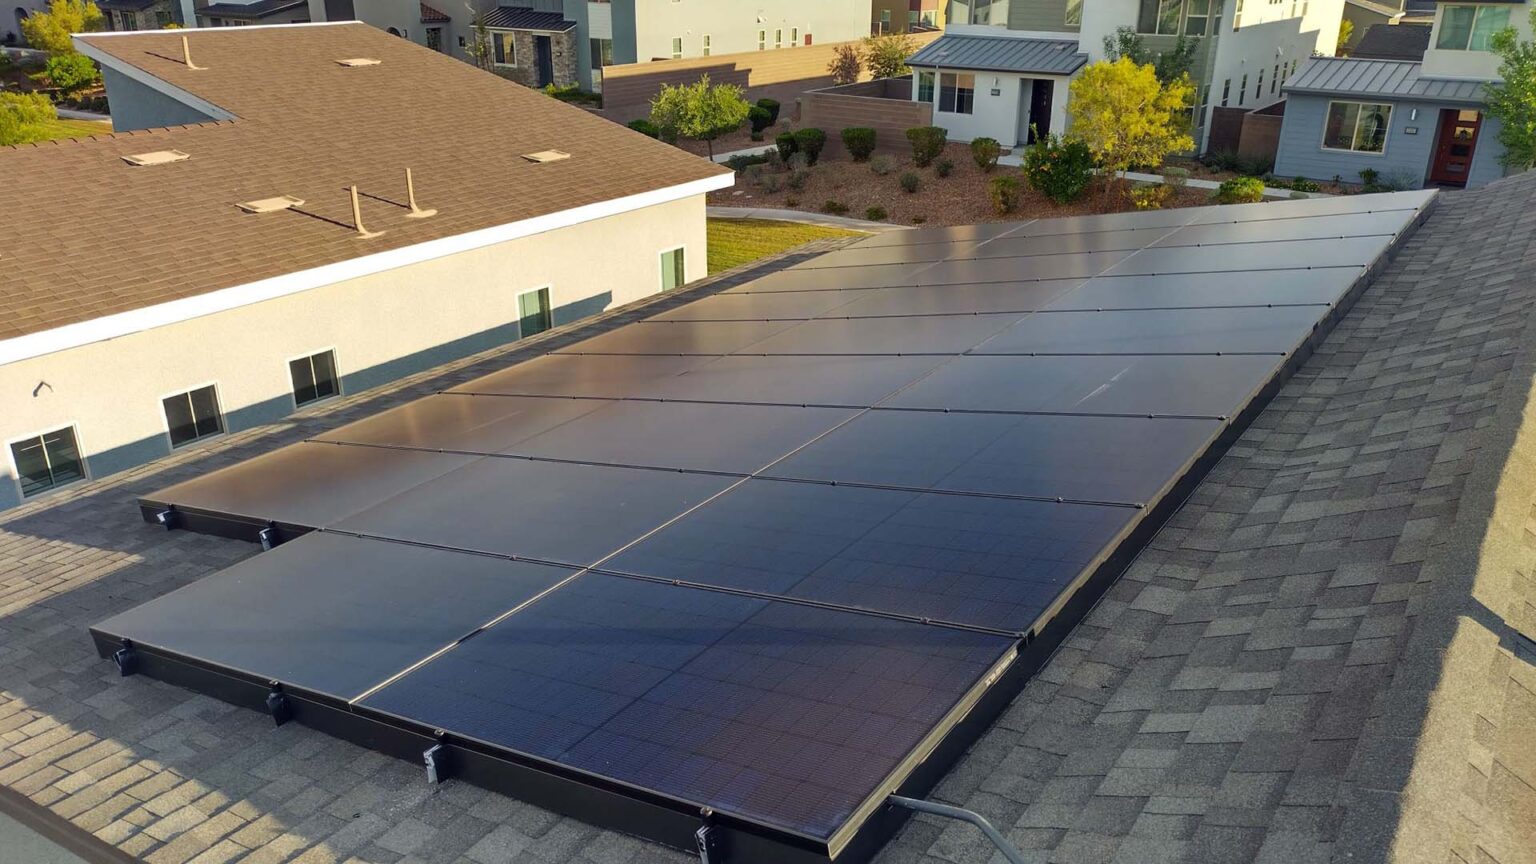 Shingle rooftop solar panels